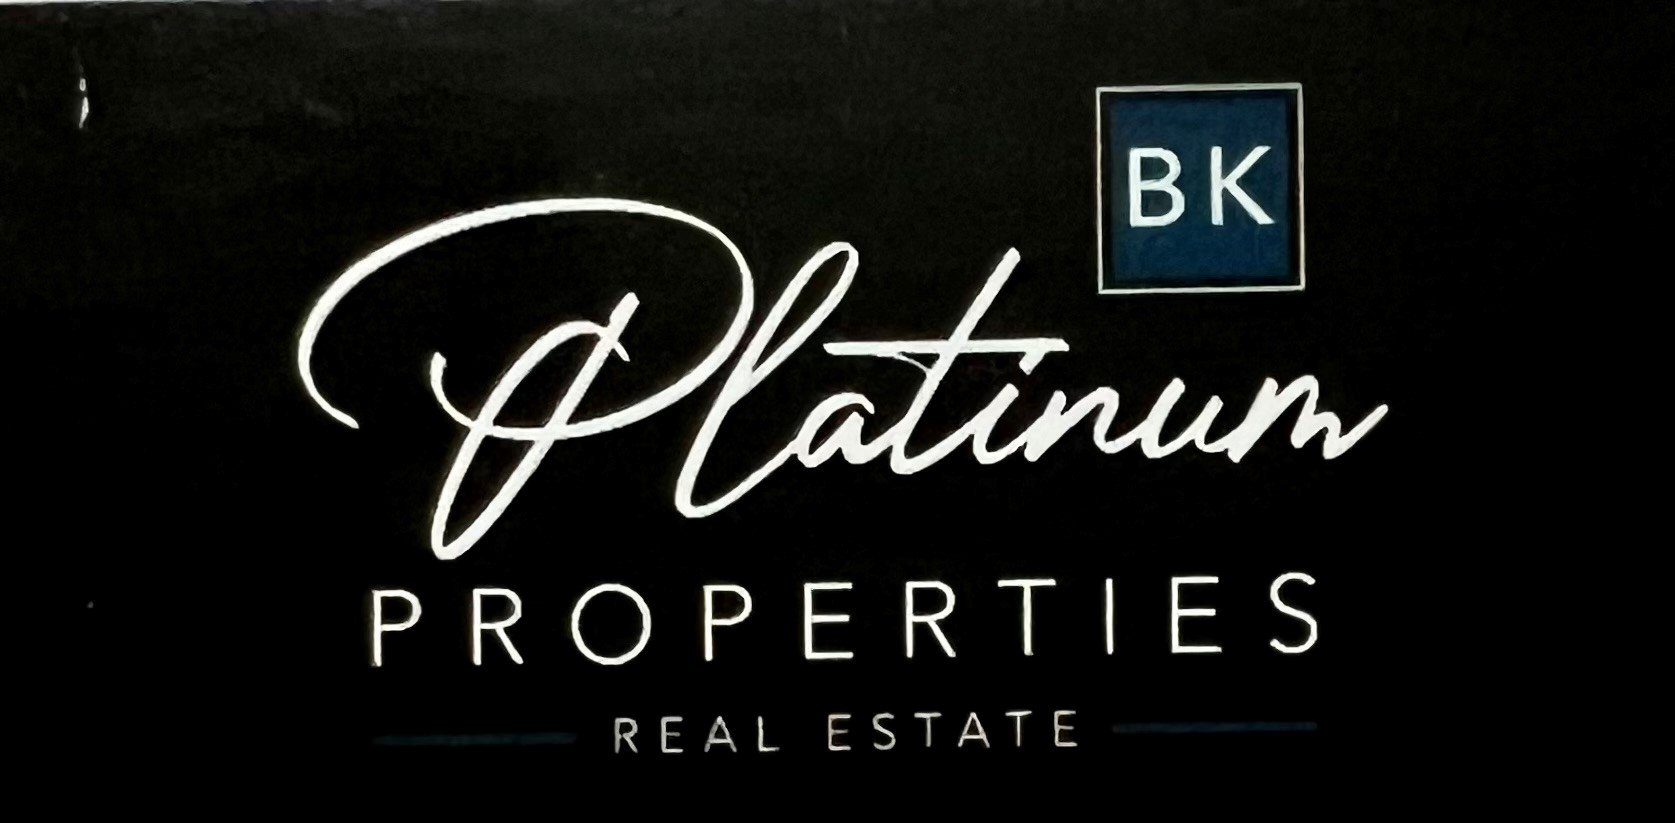 BK Platinum Properties Real Estate.jpg